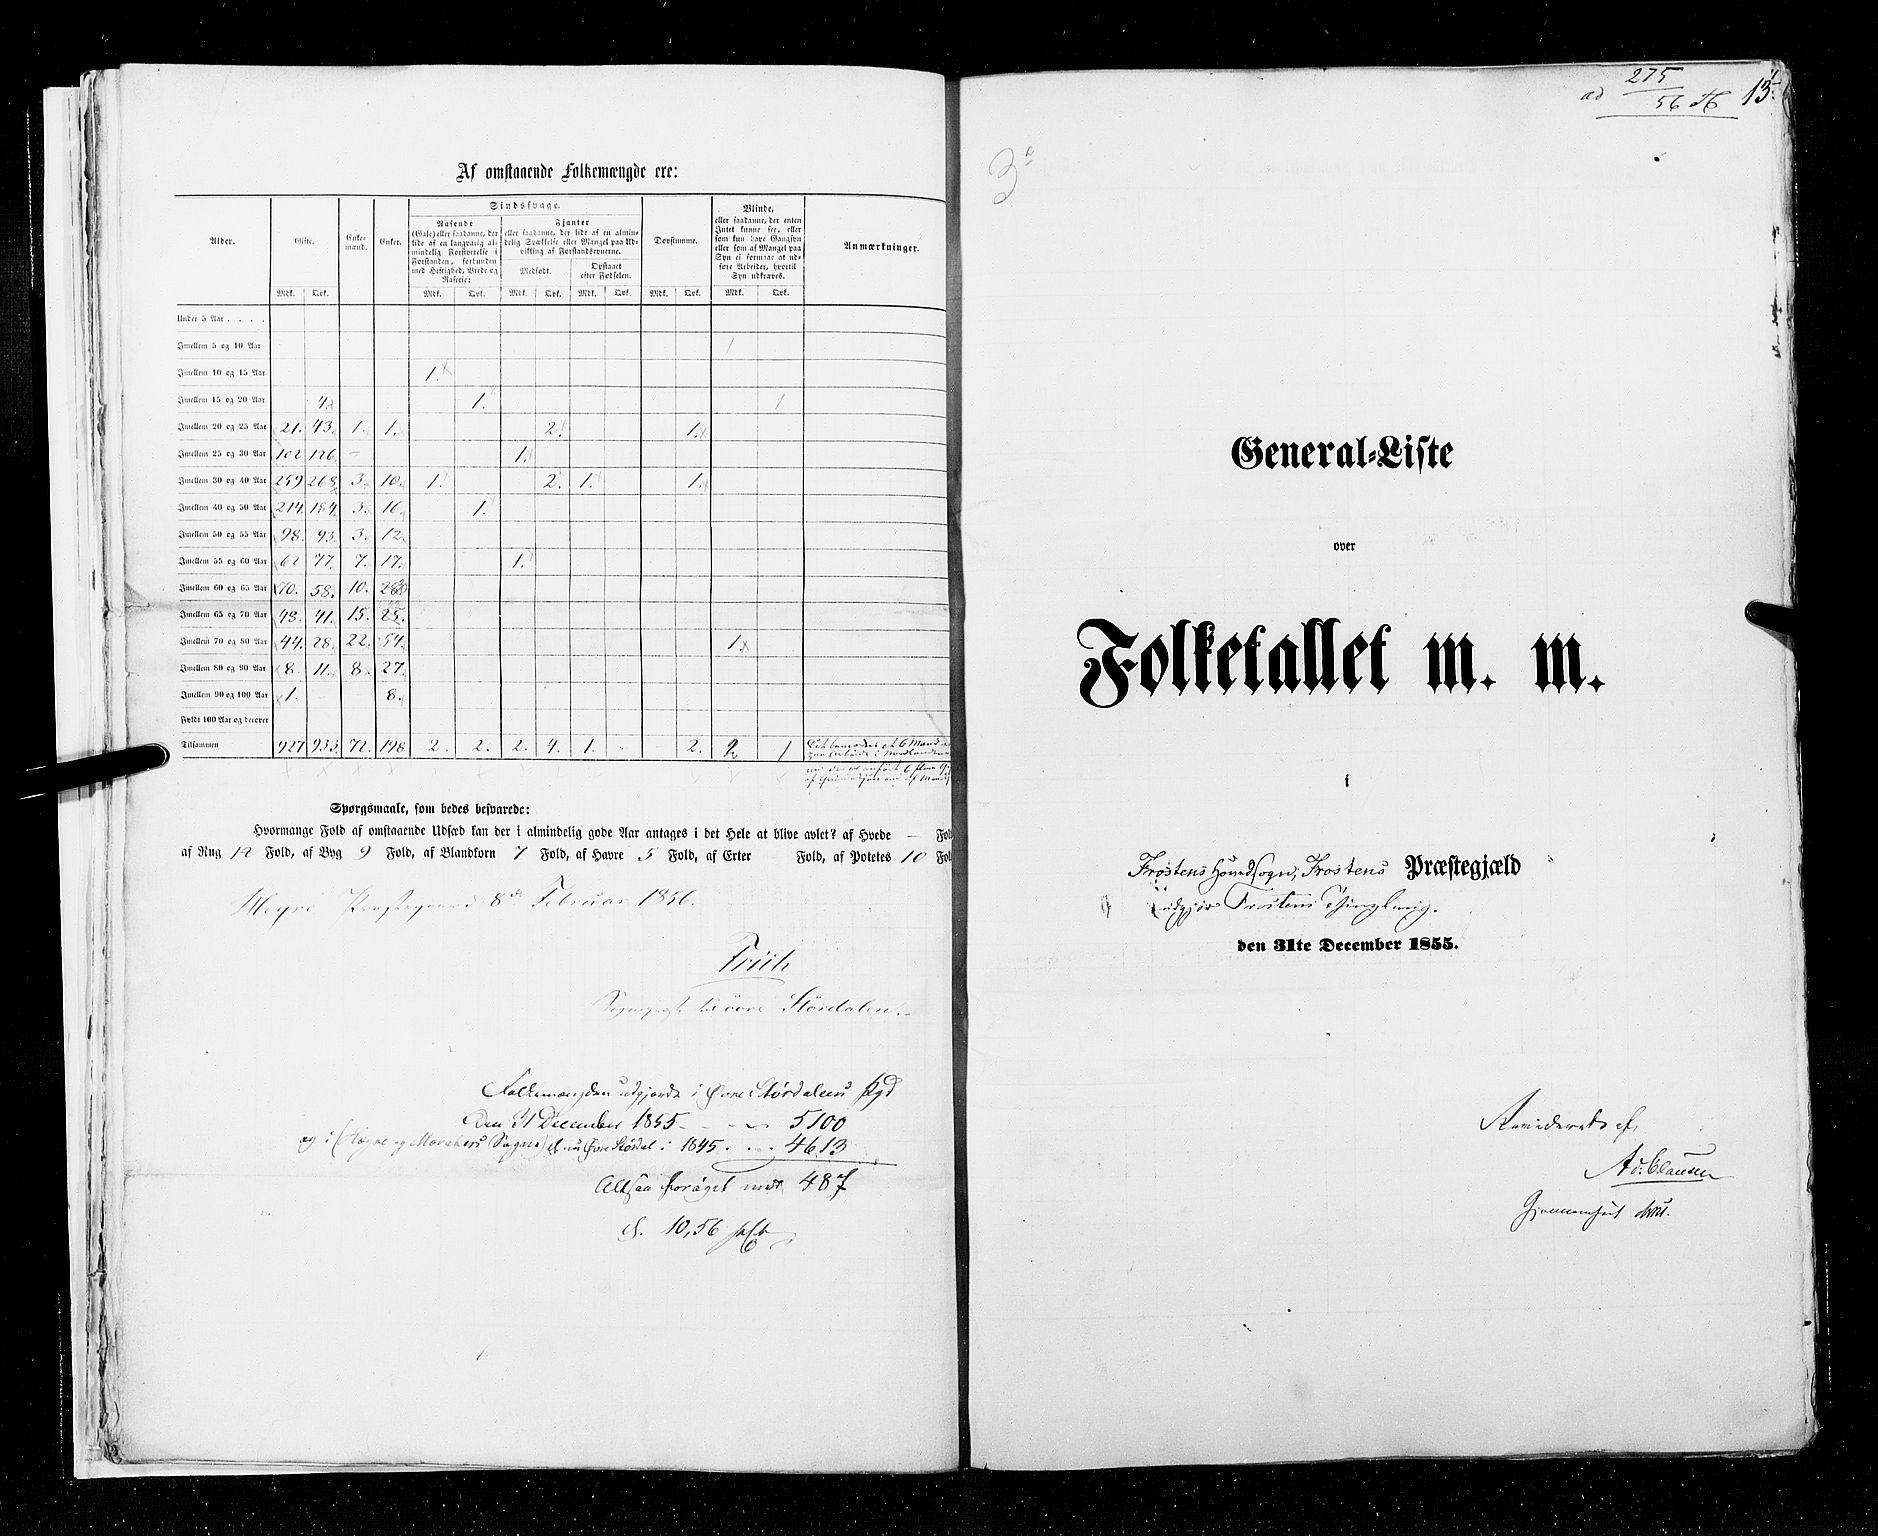 RA, Folketellingen 1855, bind 6A: Nordre Trondhjem amt og Nordland amt, 1855, s. 13